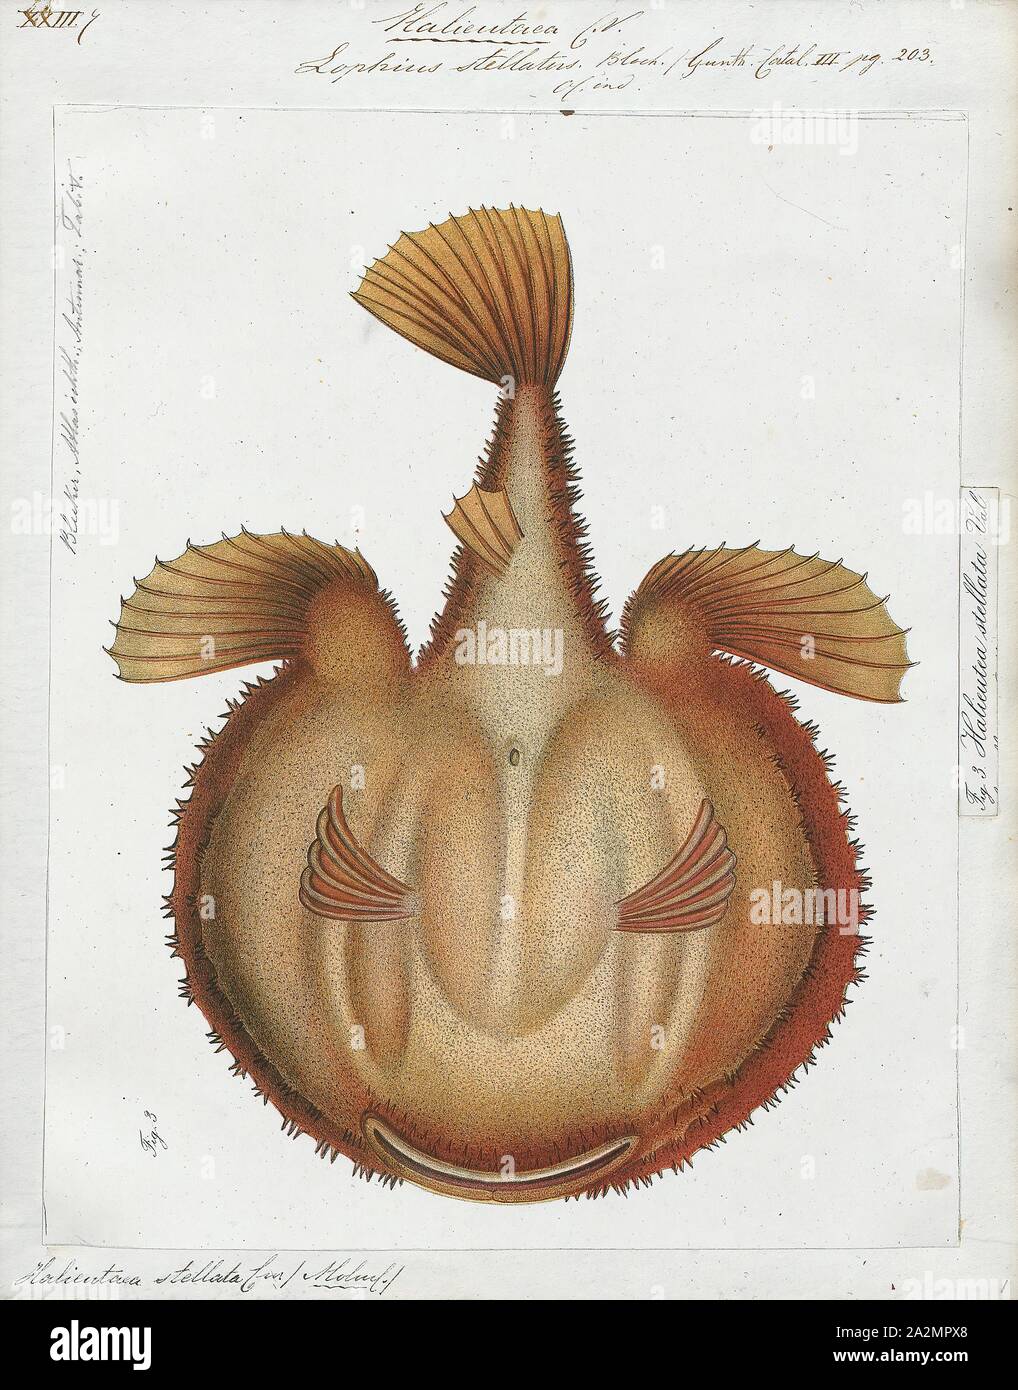 Halieutaea stellata, Drucken, den Sternenhimmel, handfish Halieutaea stellata, ist ein fledermausfische der Familie Ogcocephalidae auf dem Kontinentalsockel des Indopazifik Ozeane in Tiefen zwischen 50 und 400 m gefunden. Sie sind bis zu 30 cm langen, unterer Teil Stockfoto